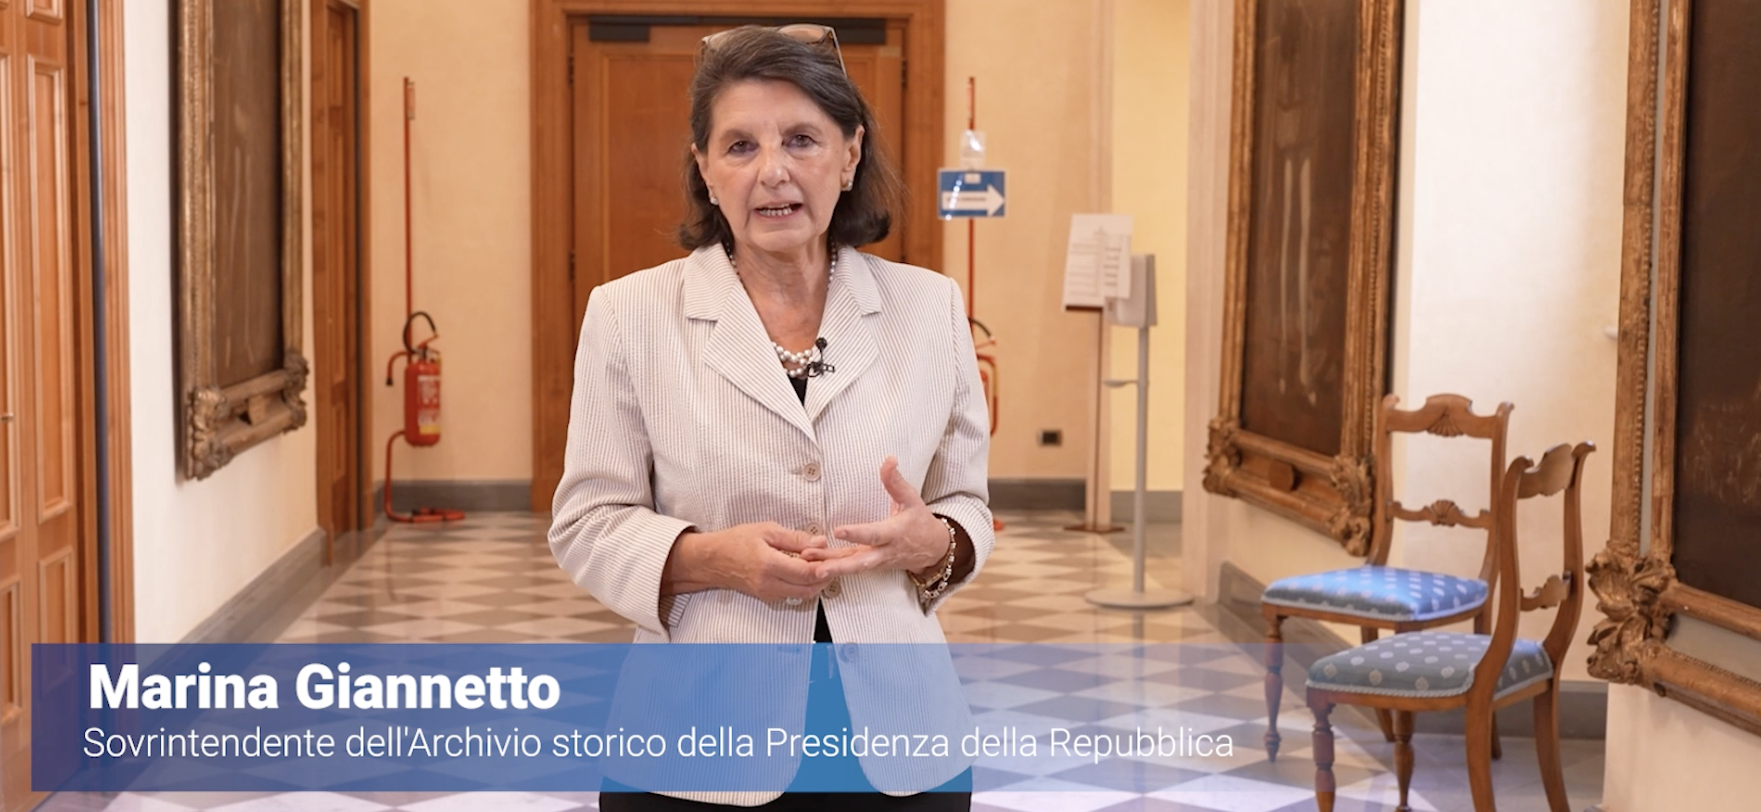 Marina Giannetto, Sovrintendente dell'Archivio Storico della Presidenza della Repubblica